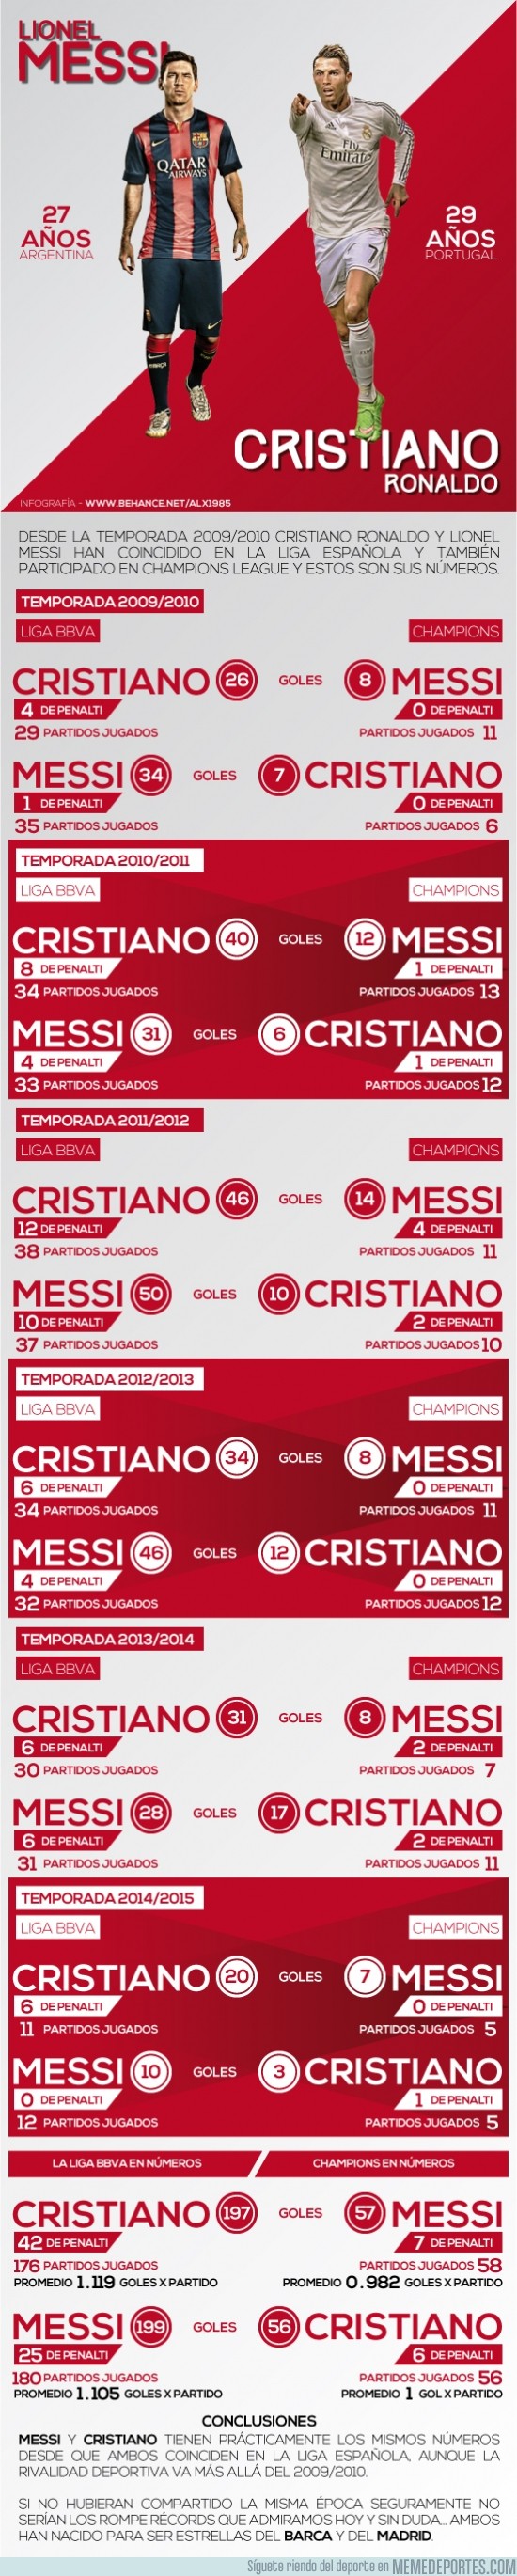 416086 - Números de Messi y Cristiano desde el 2009/2010